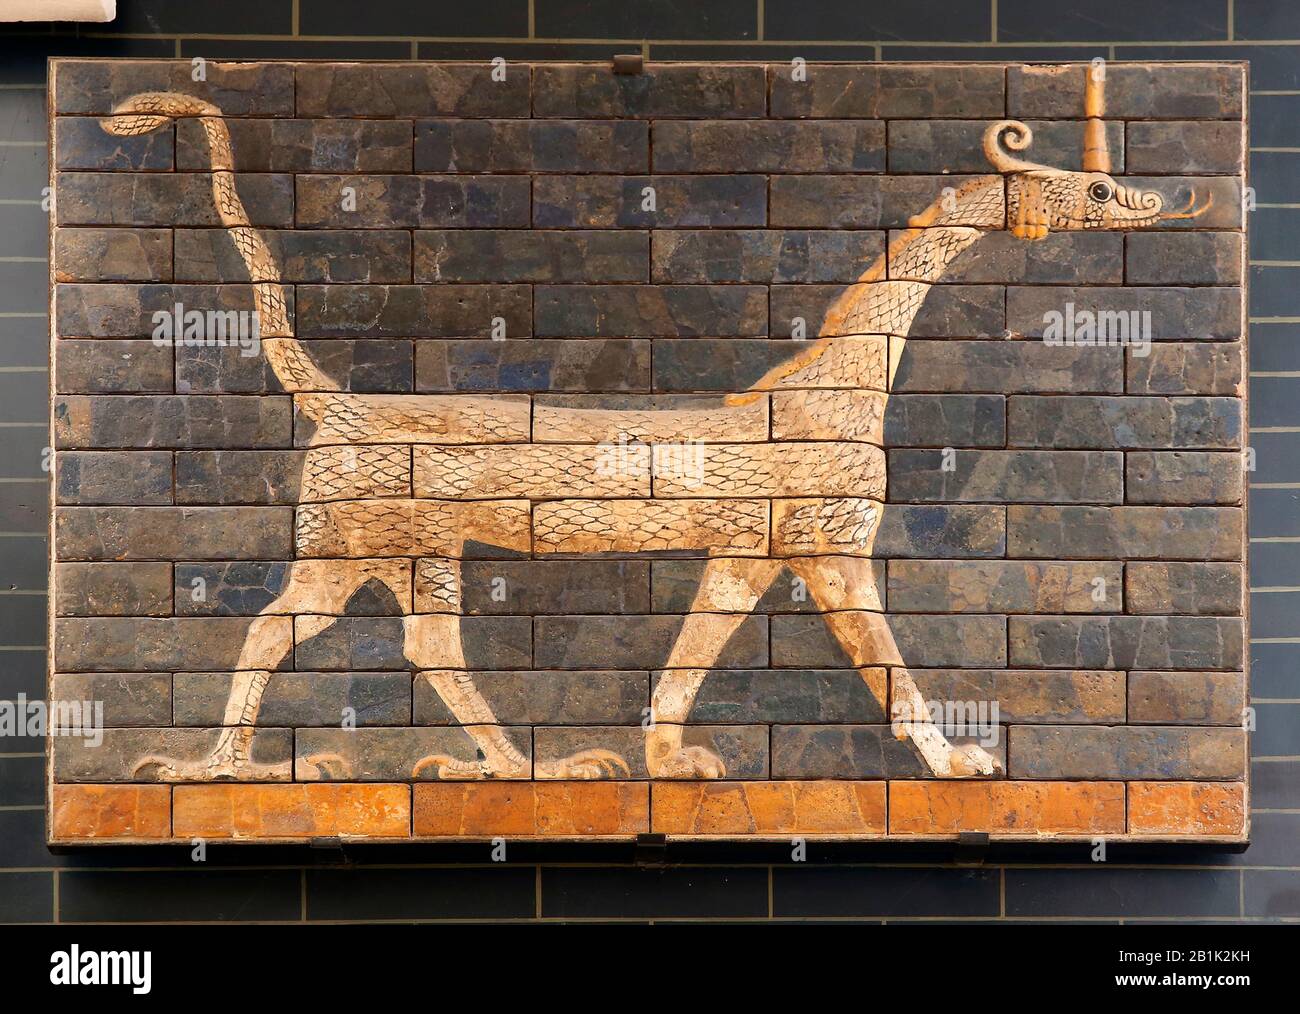 Mushusus (Drachen). Ishtar-Tor. Babylon. Neo-Babylon. 604-562 V. CHR. Glasierter Brick. Irak. Istanbul Archaeoligical Museum. Türkei. Stockfoto